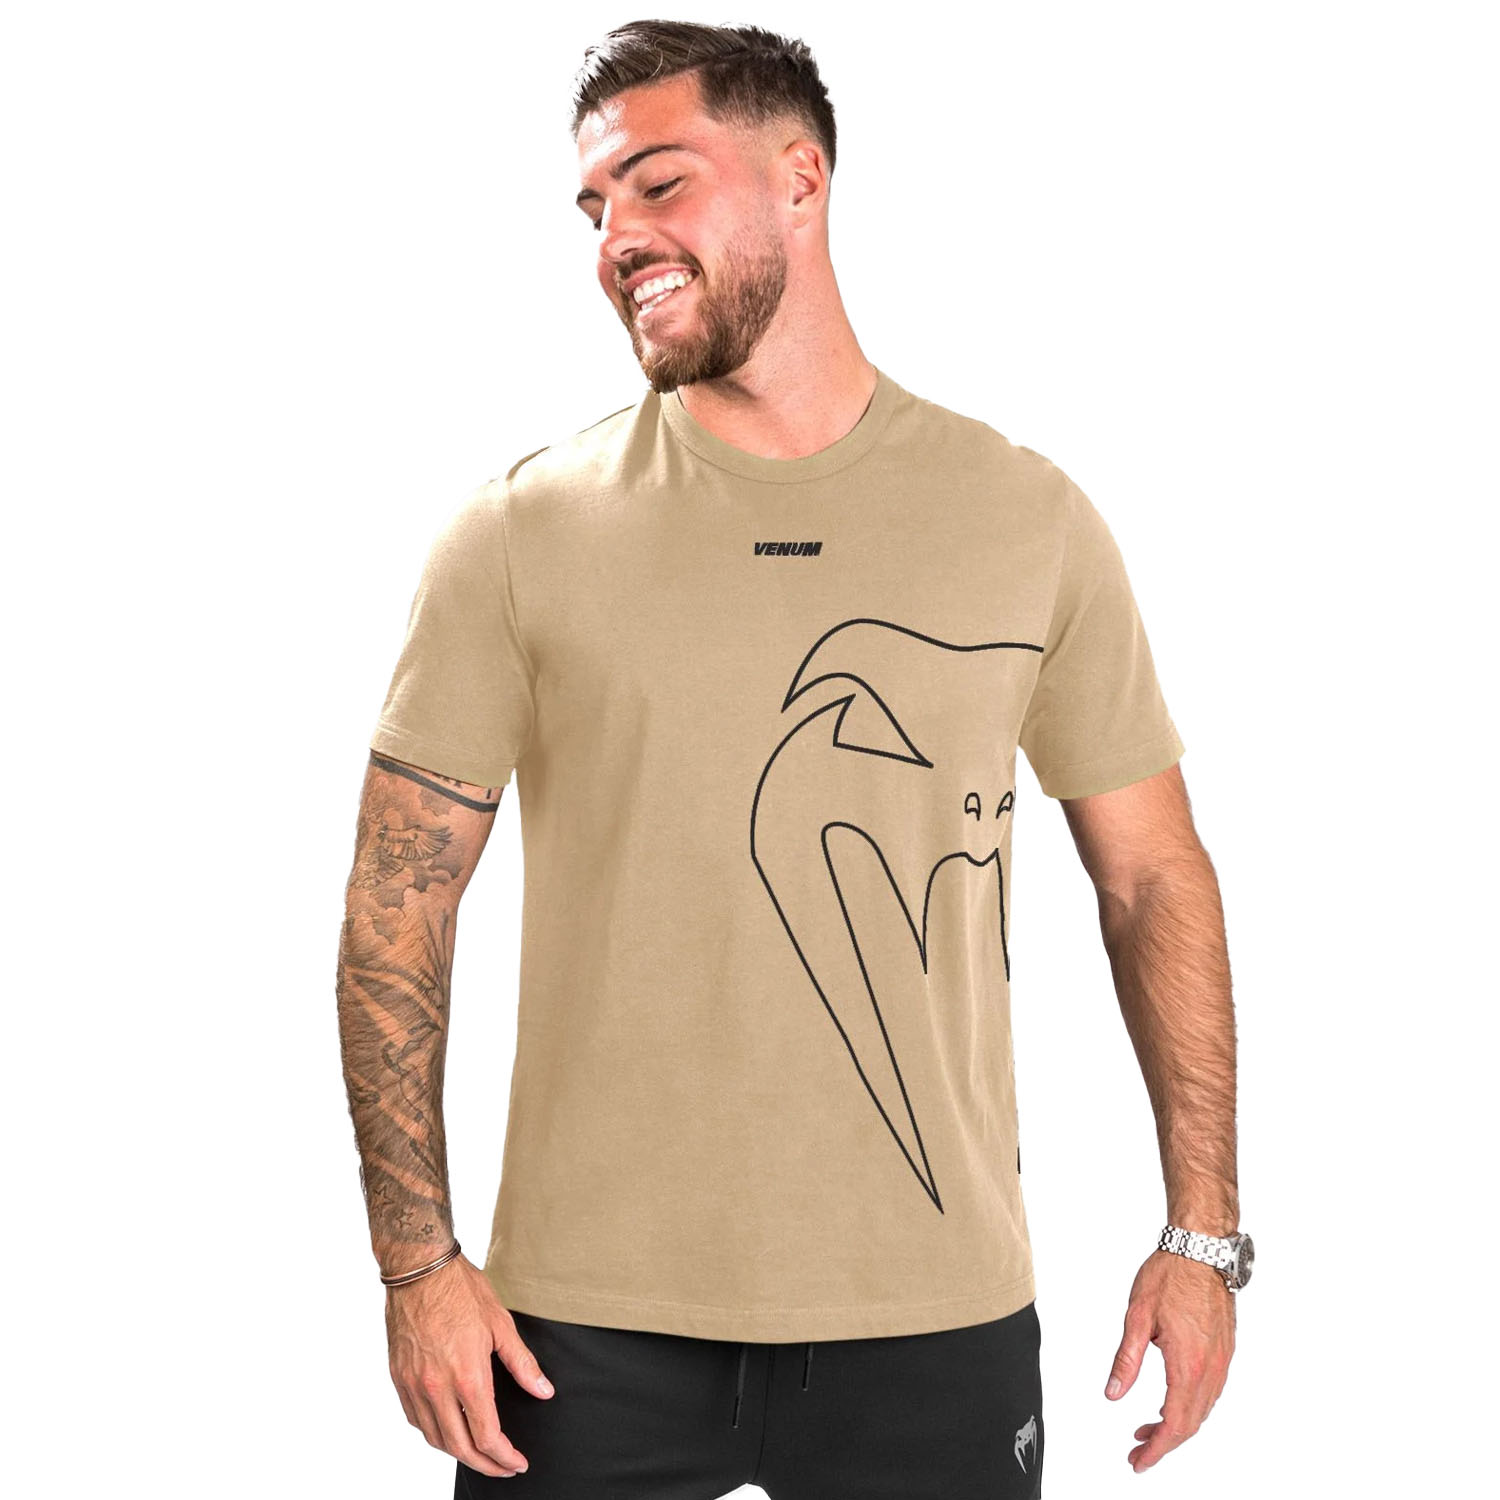 VENUM T-Shirt, Giant Connect, beige, L